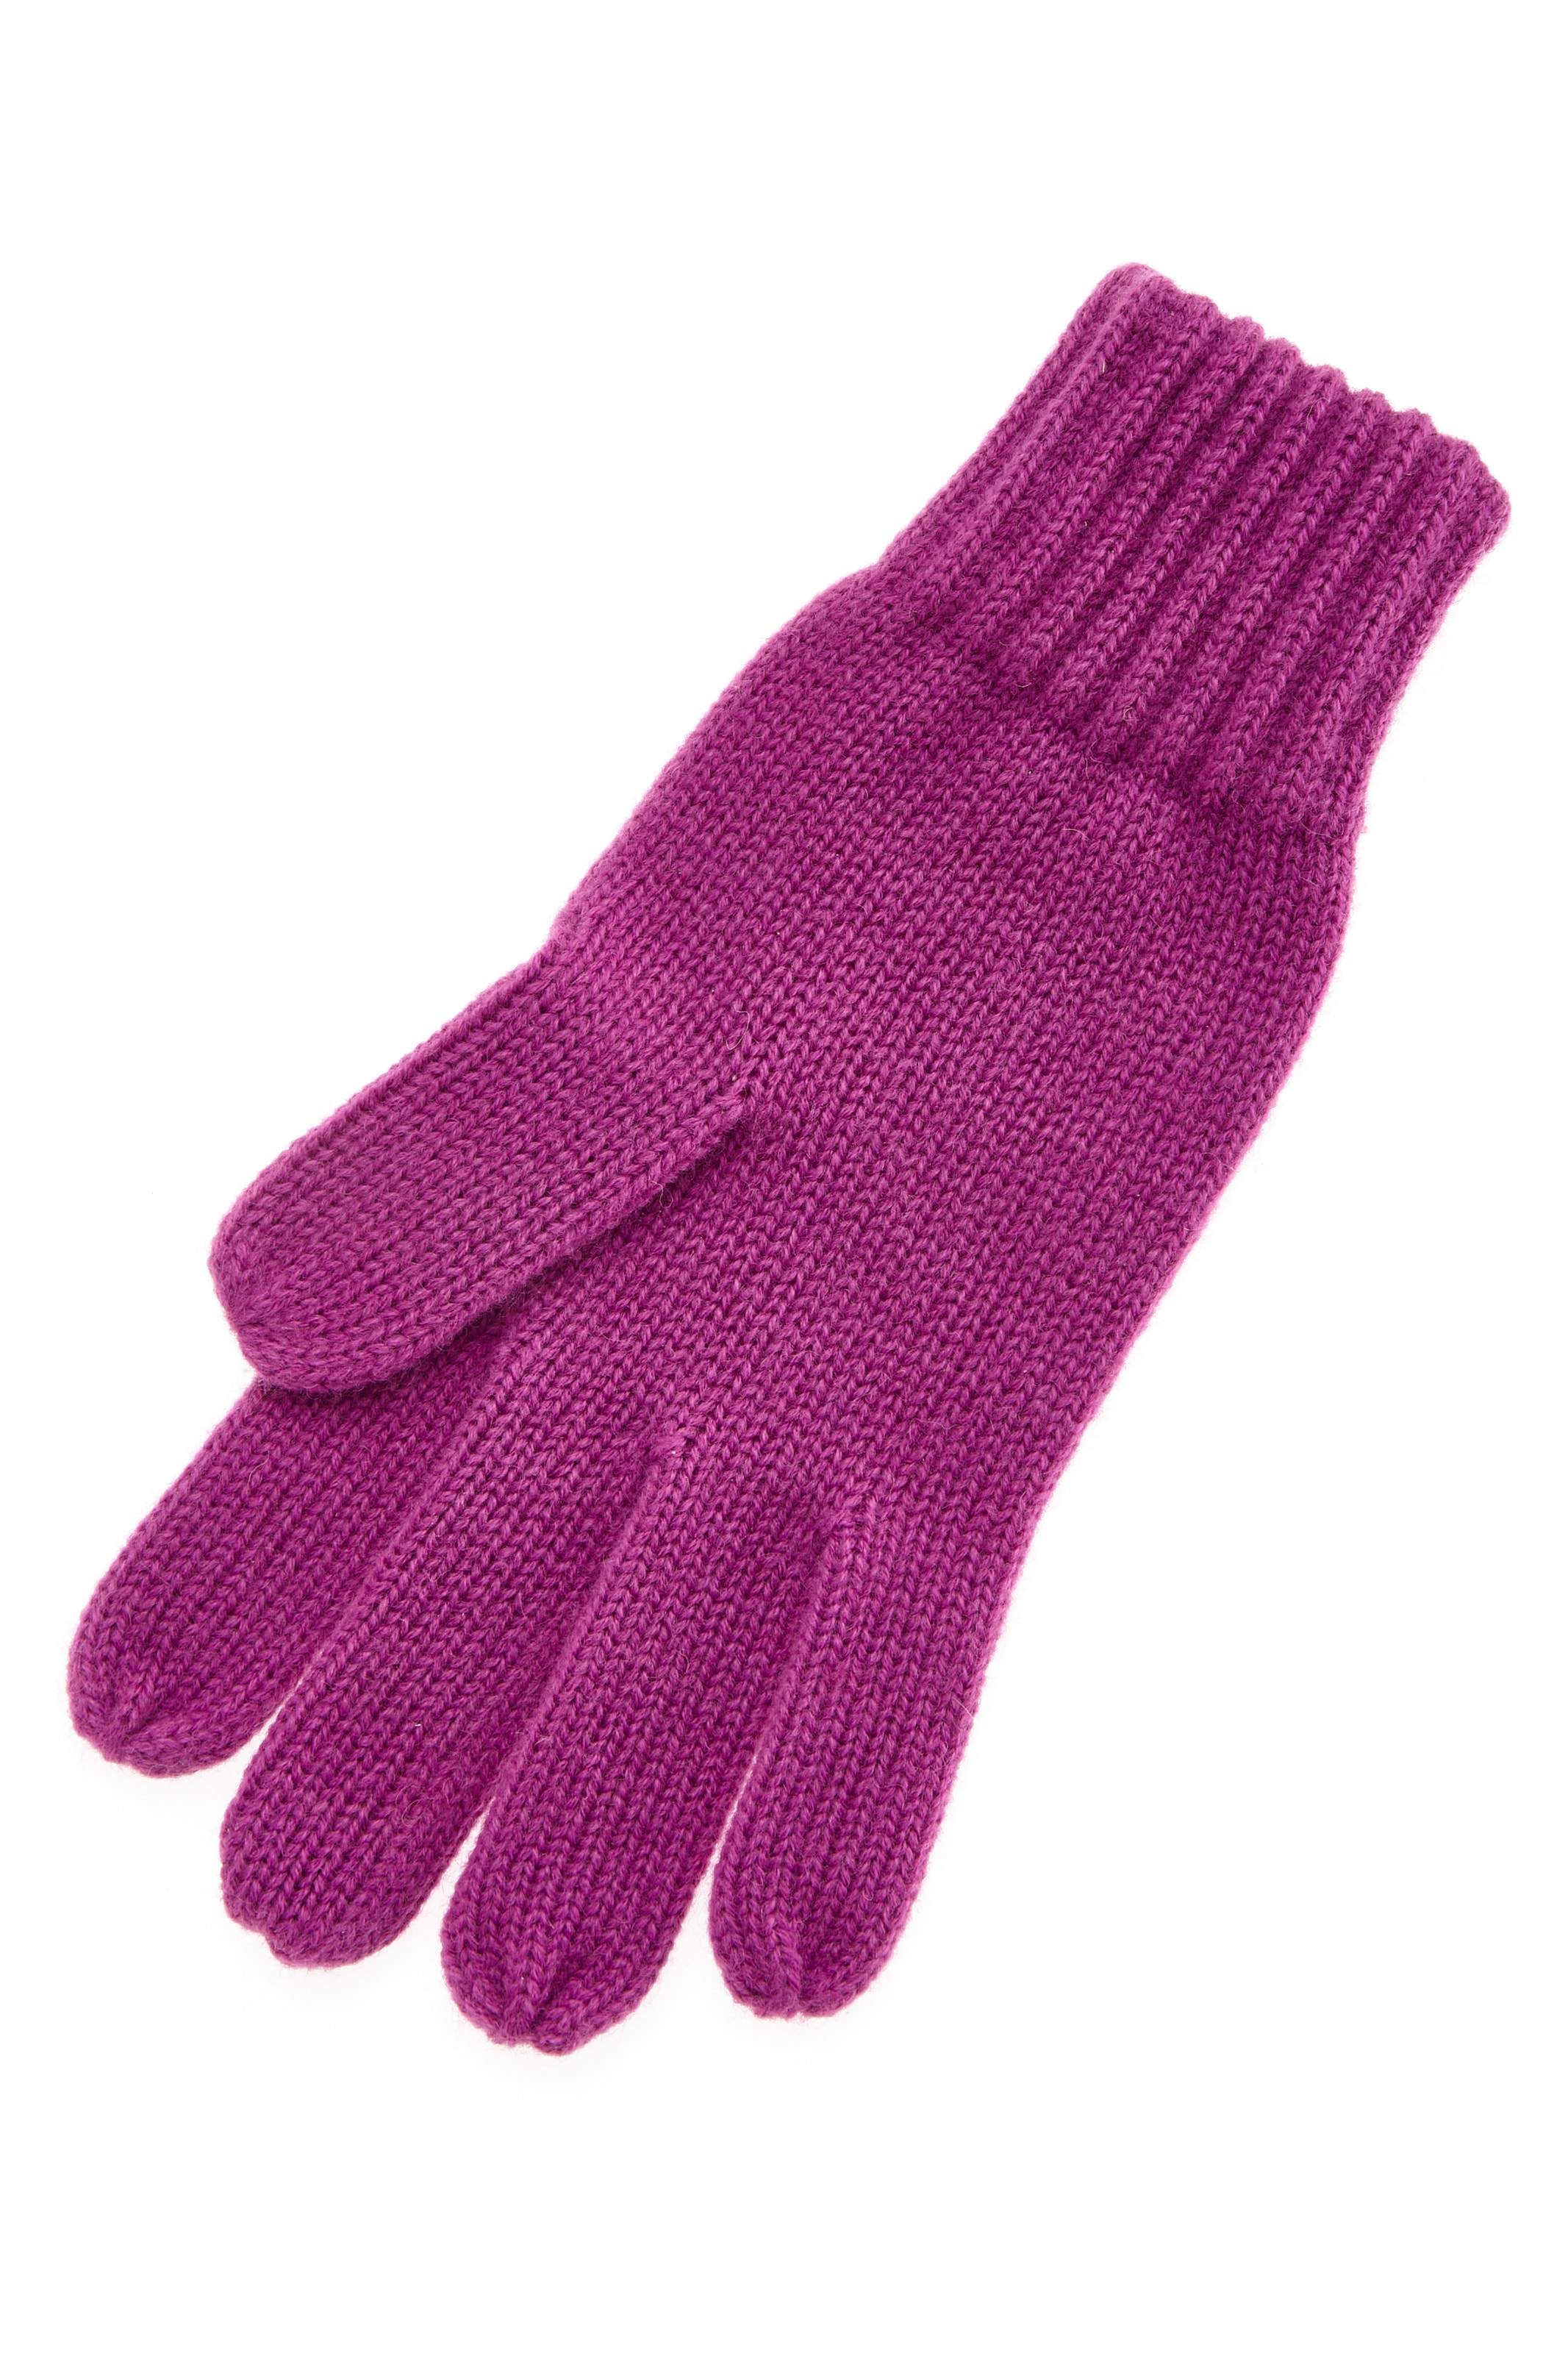 LASCANA Strickhandschuhe, aus Wollmix, bei Handwärmer Winterhandschuhe, online